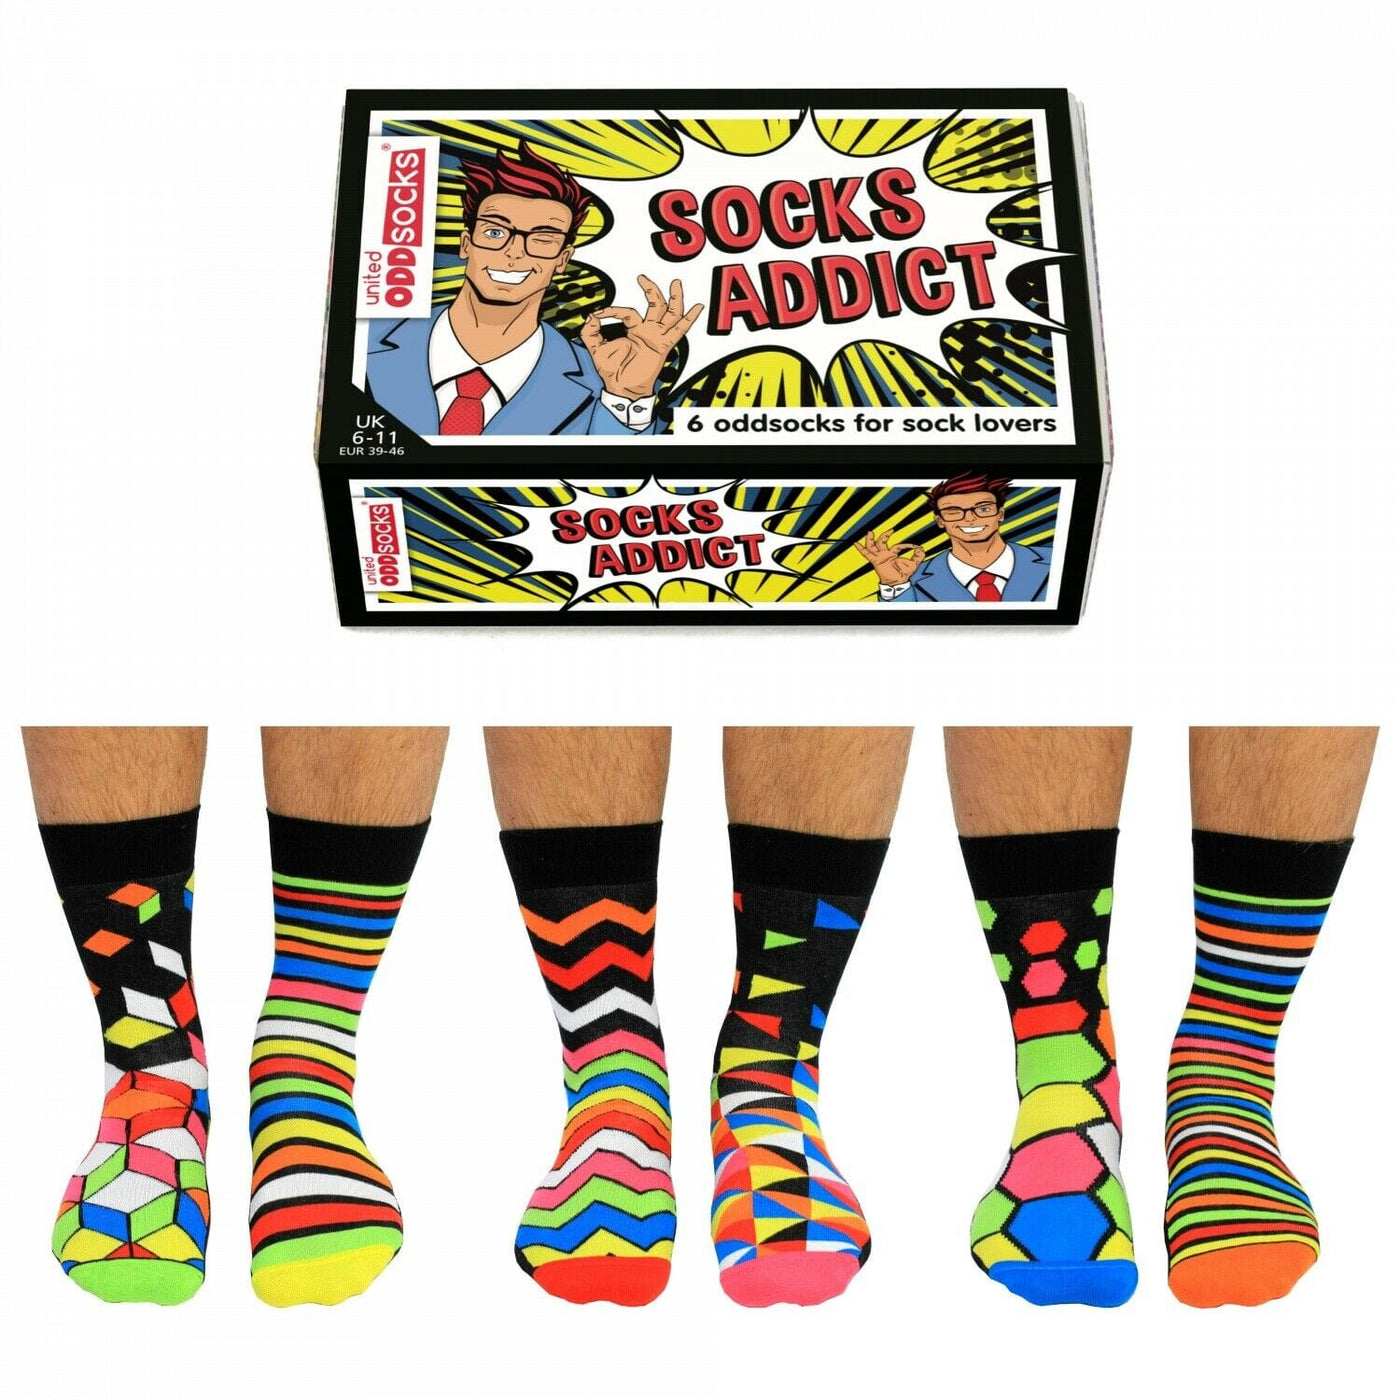 United Odd Socks Socks Socks Addict Mens Odd Socks - UK 6-11